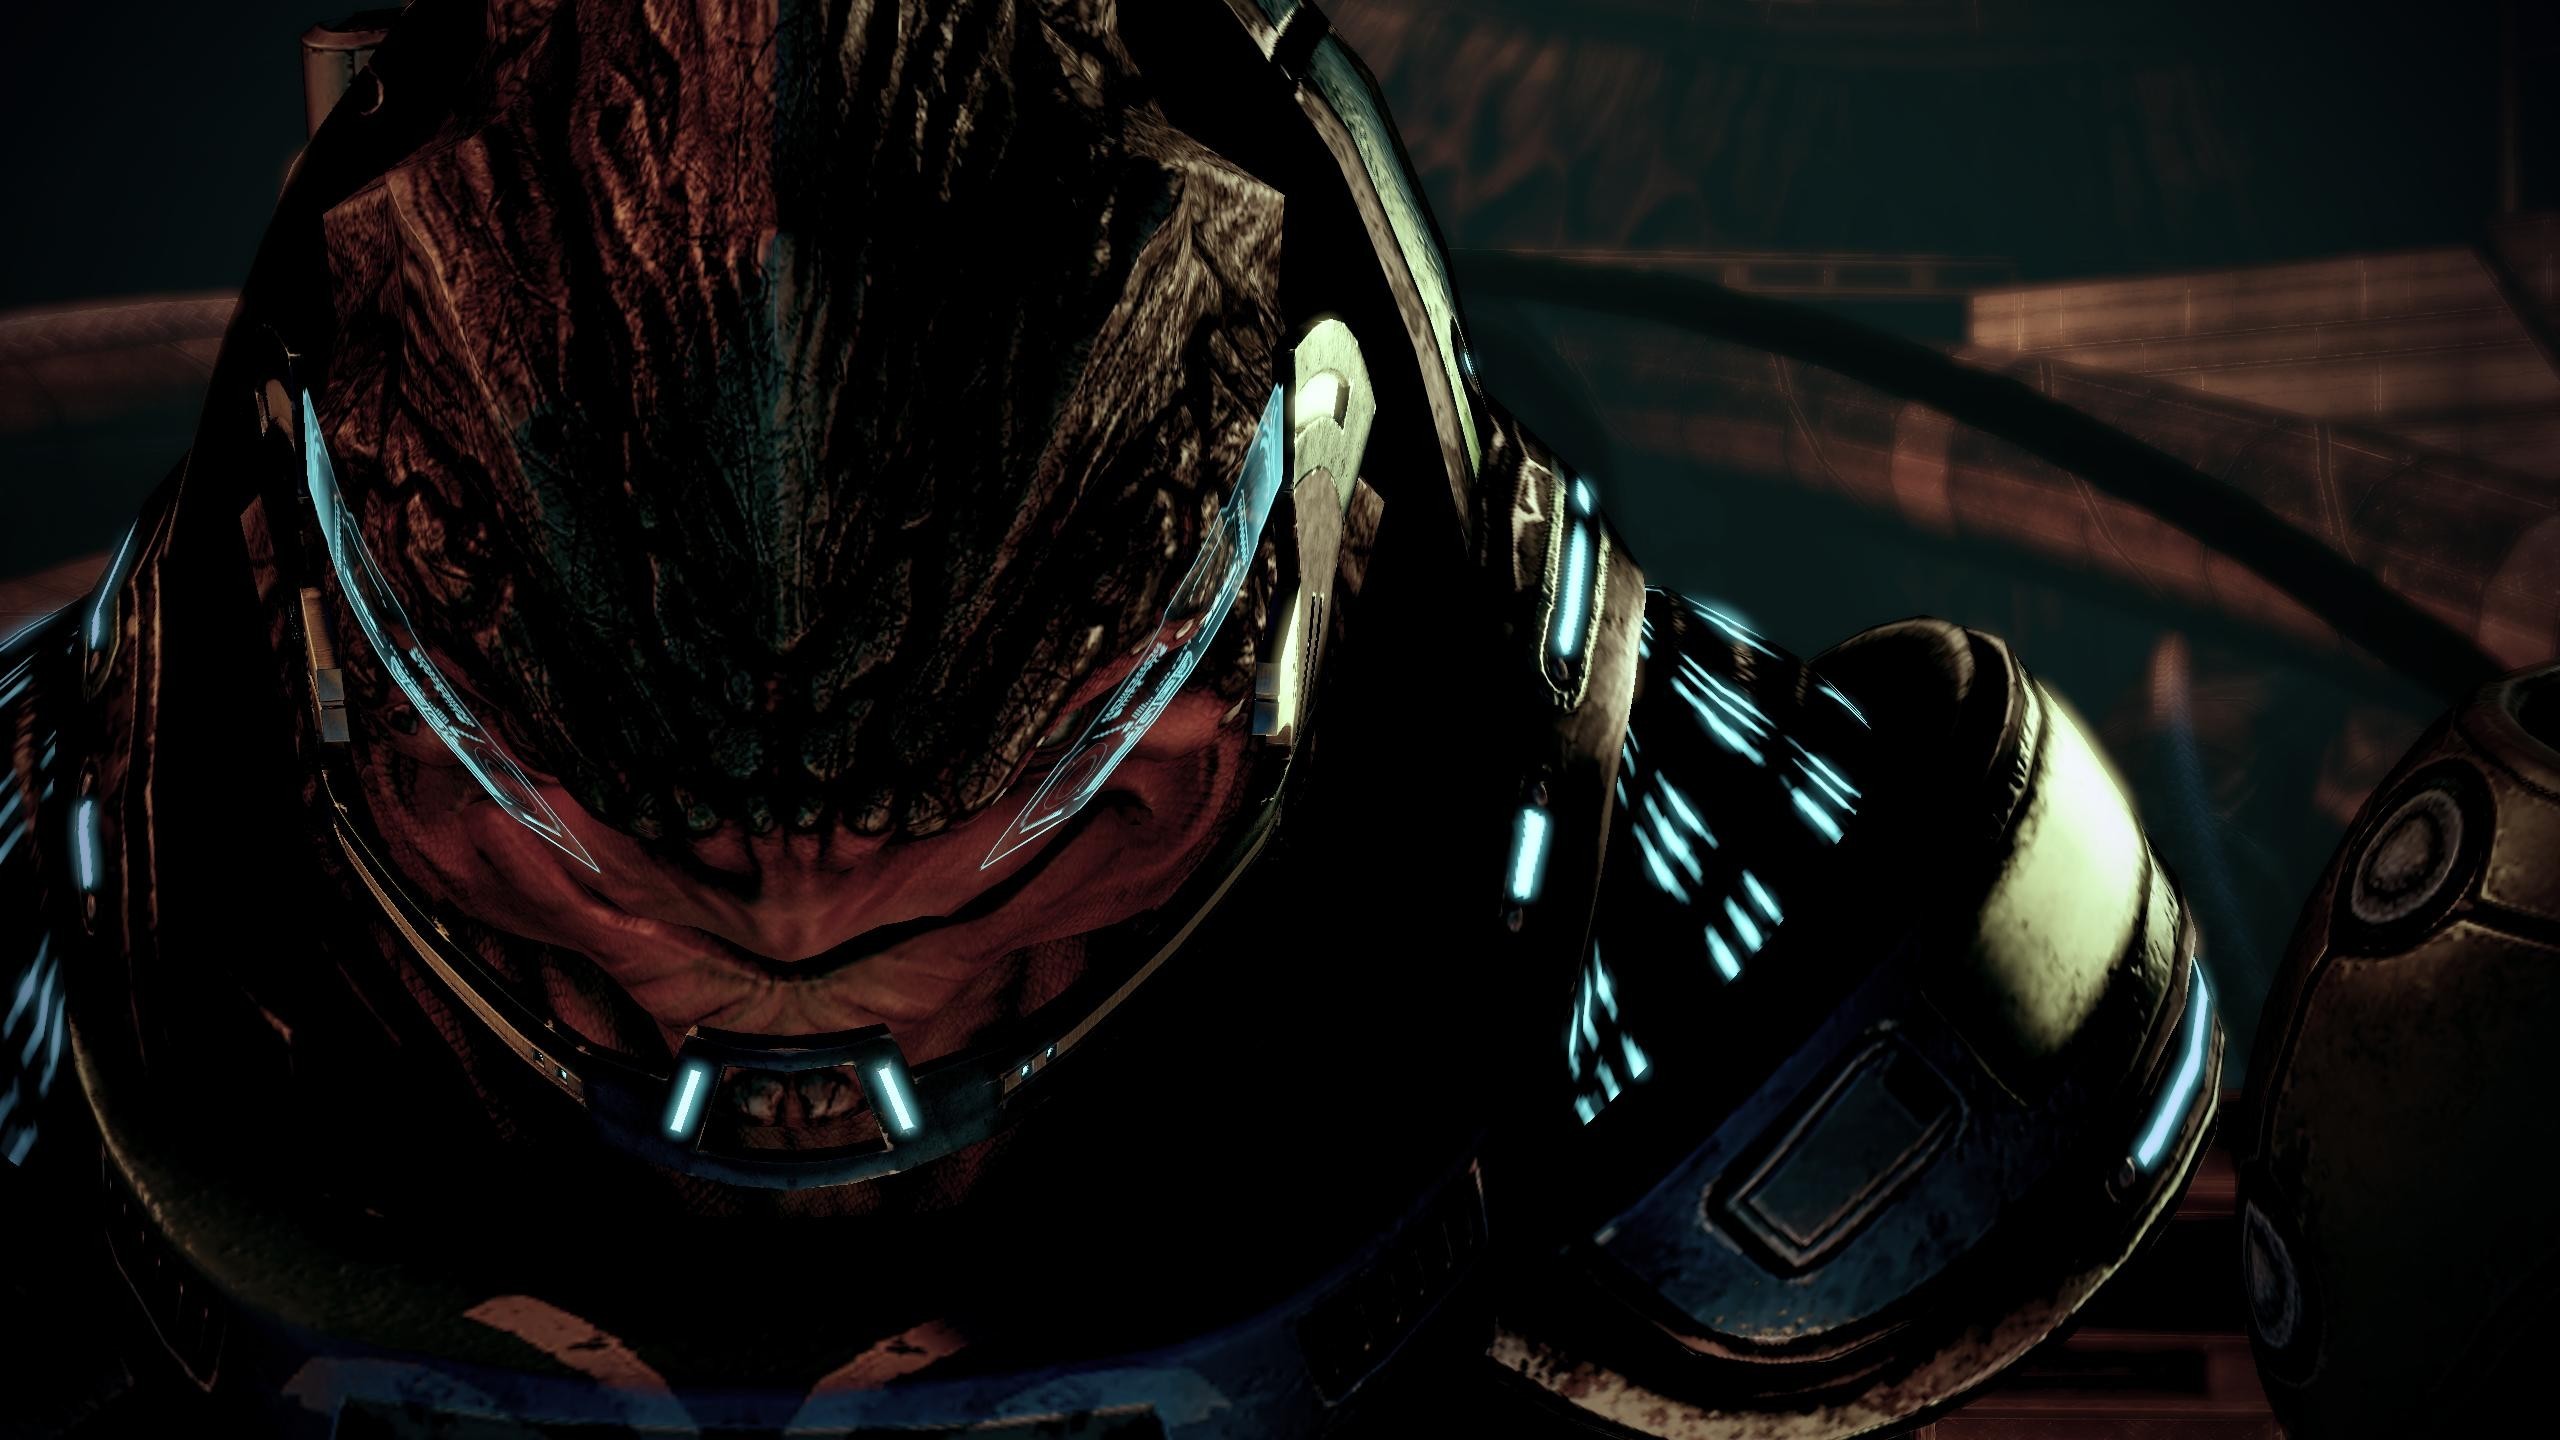 2560x1440 Mass Effect HD Wallpaper | Hintergrund |  | ID:643624 - Wallpaper  Abyss